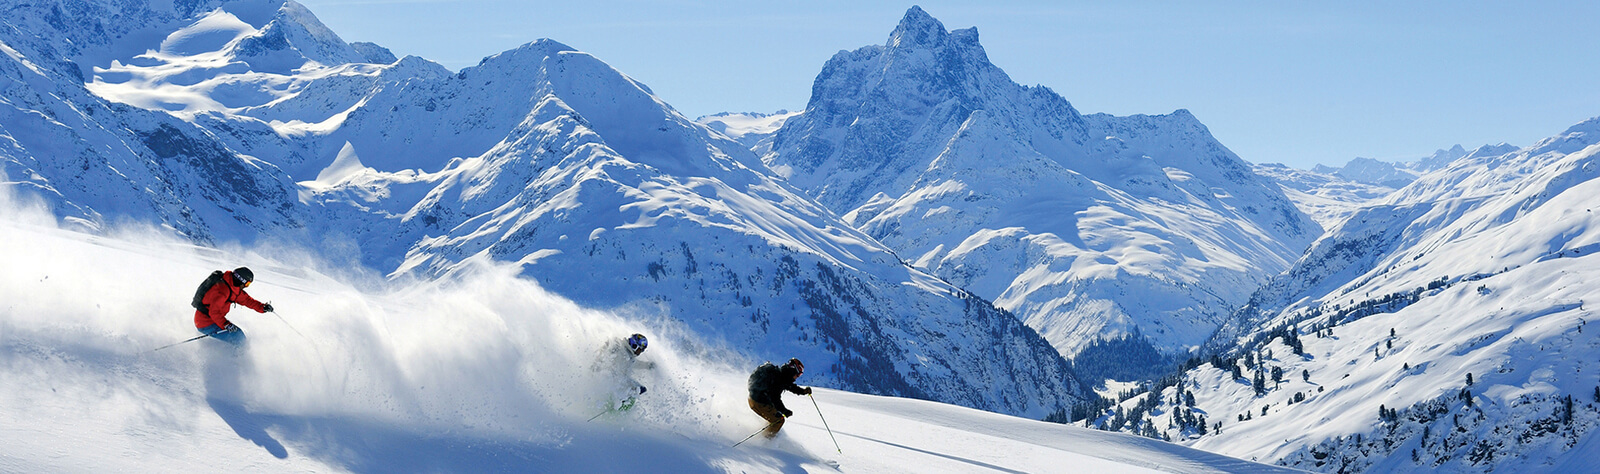 Arlberg Ski Area